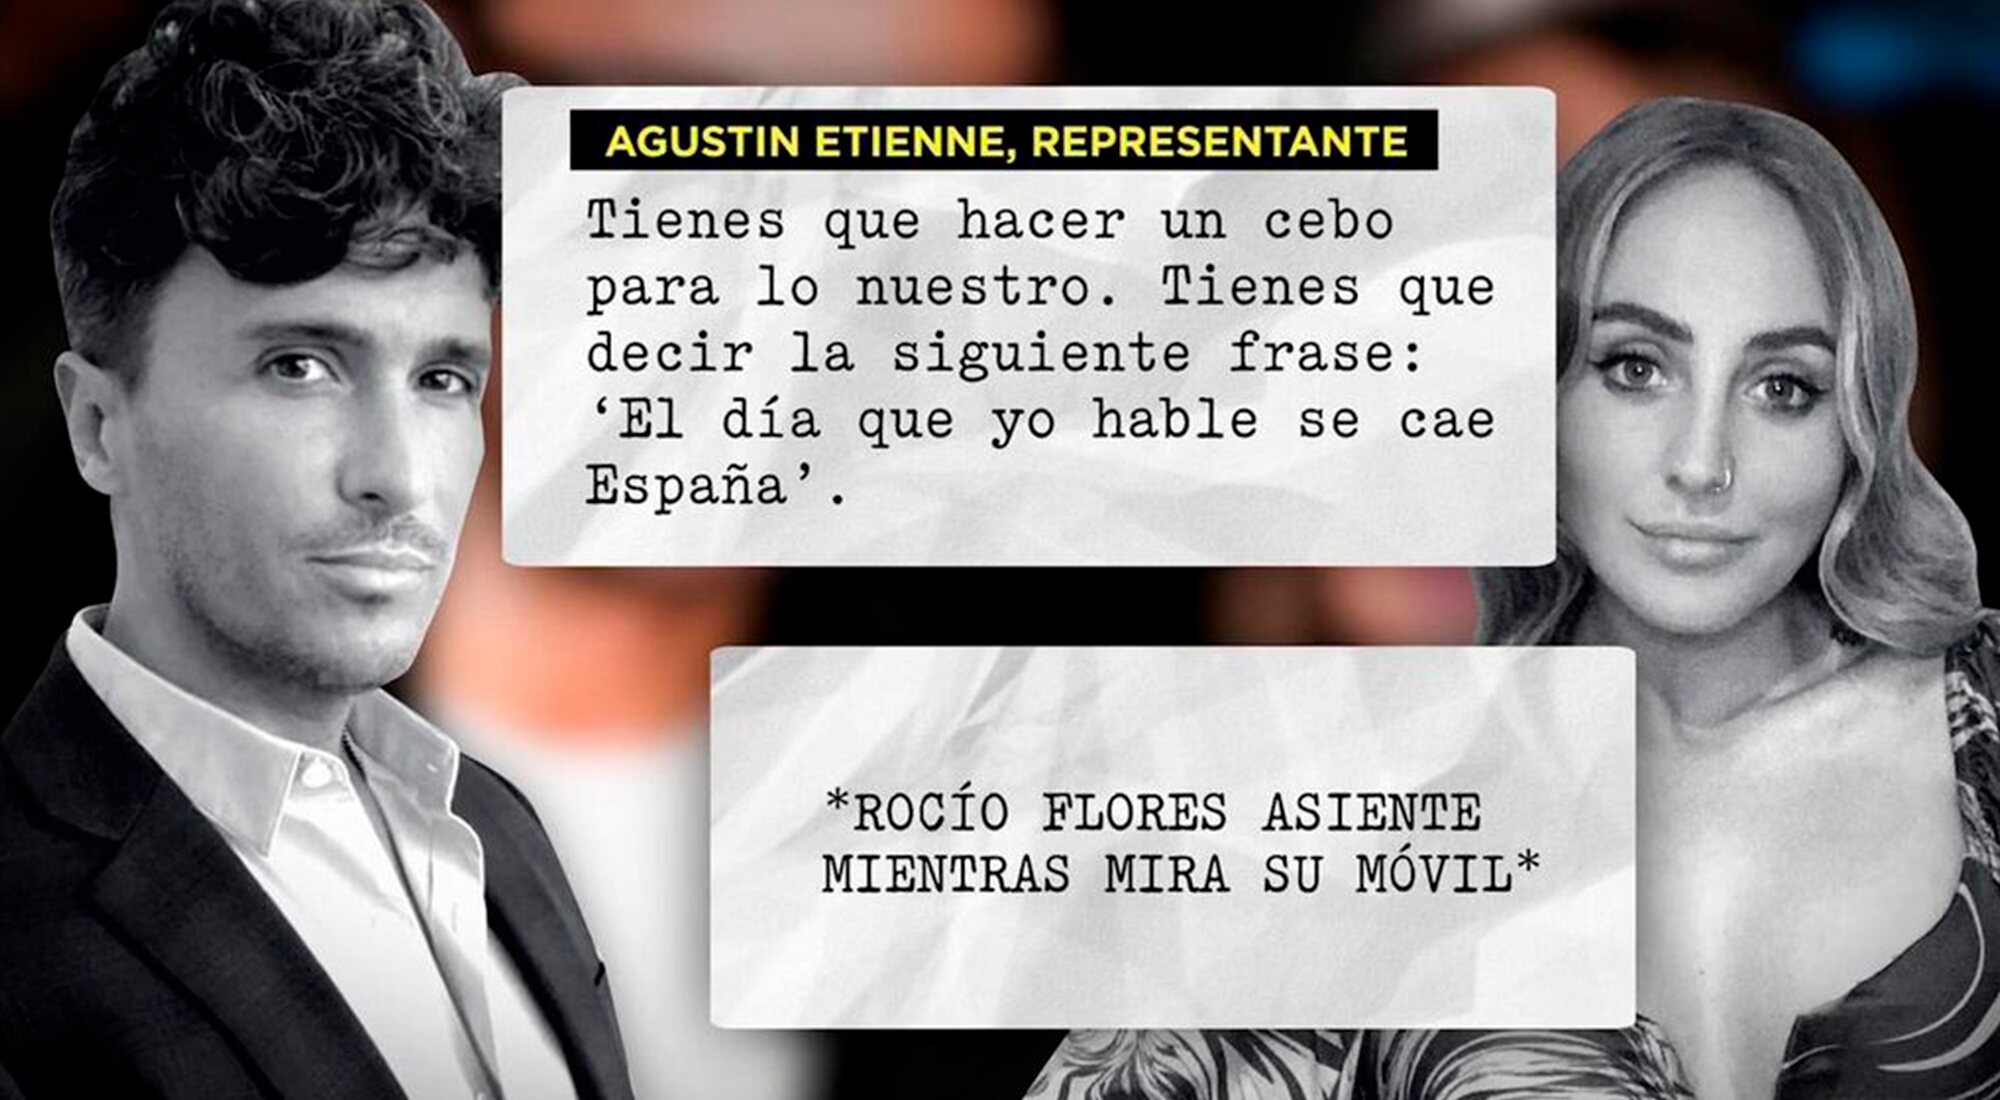 Extracto de la conversación entre Rocío Flores y Agustín Etienne